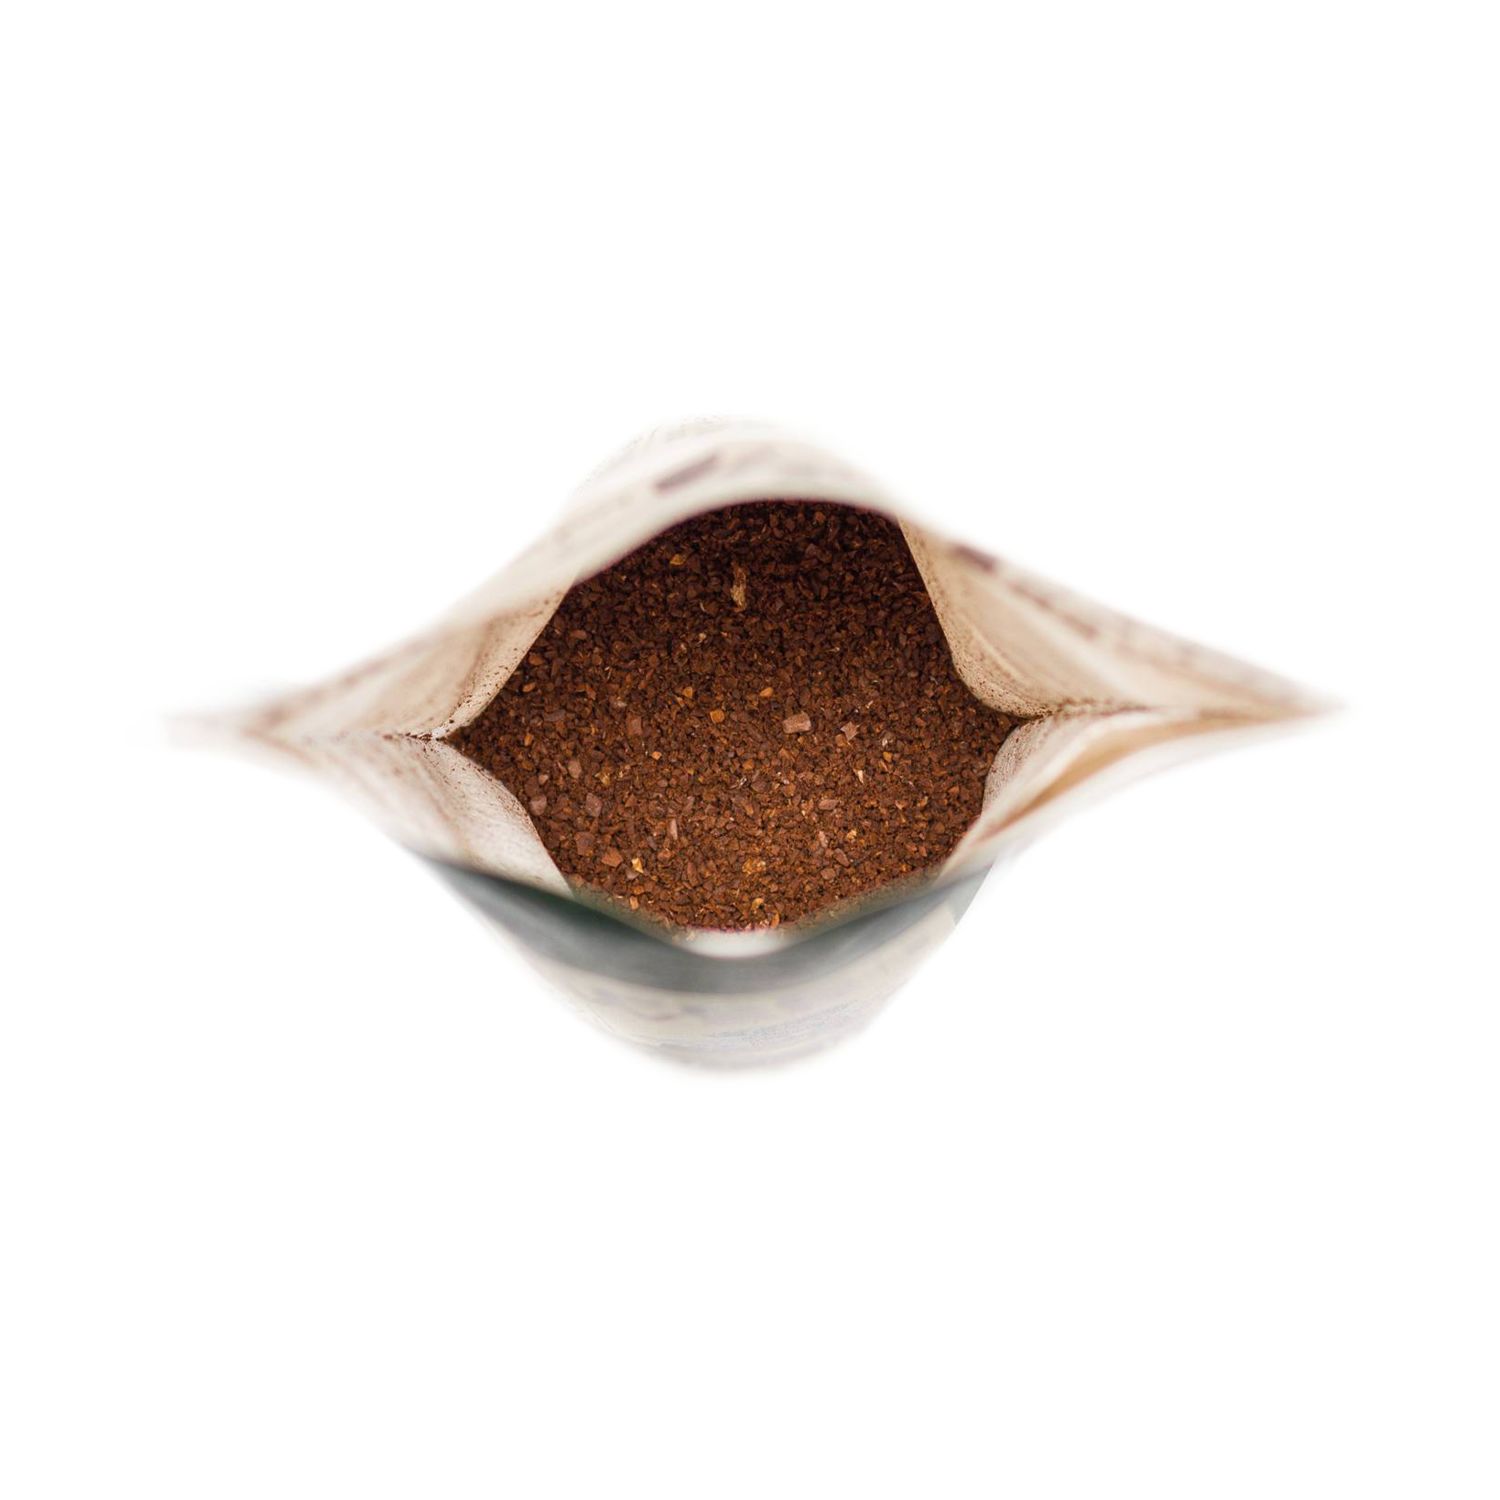 Geschenkartikel / Präsentartikel: Bio-Oster-Kaffee - Ei like Ostern